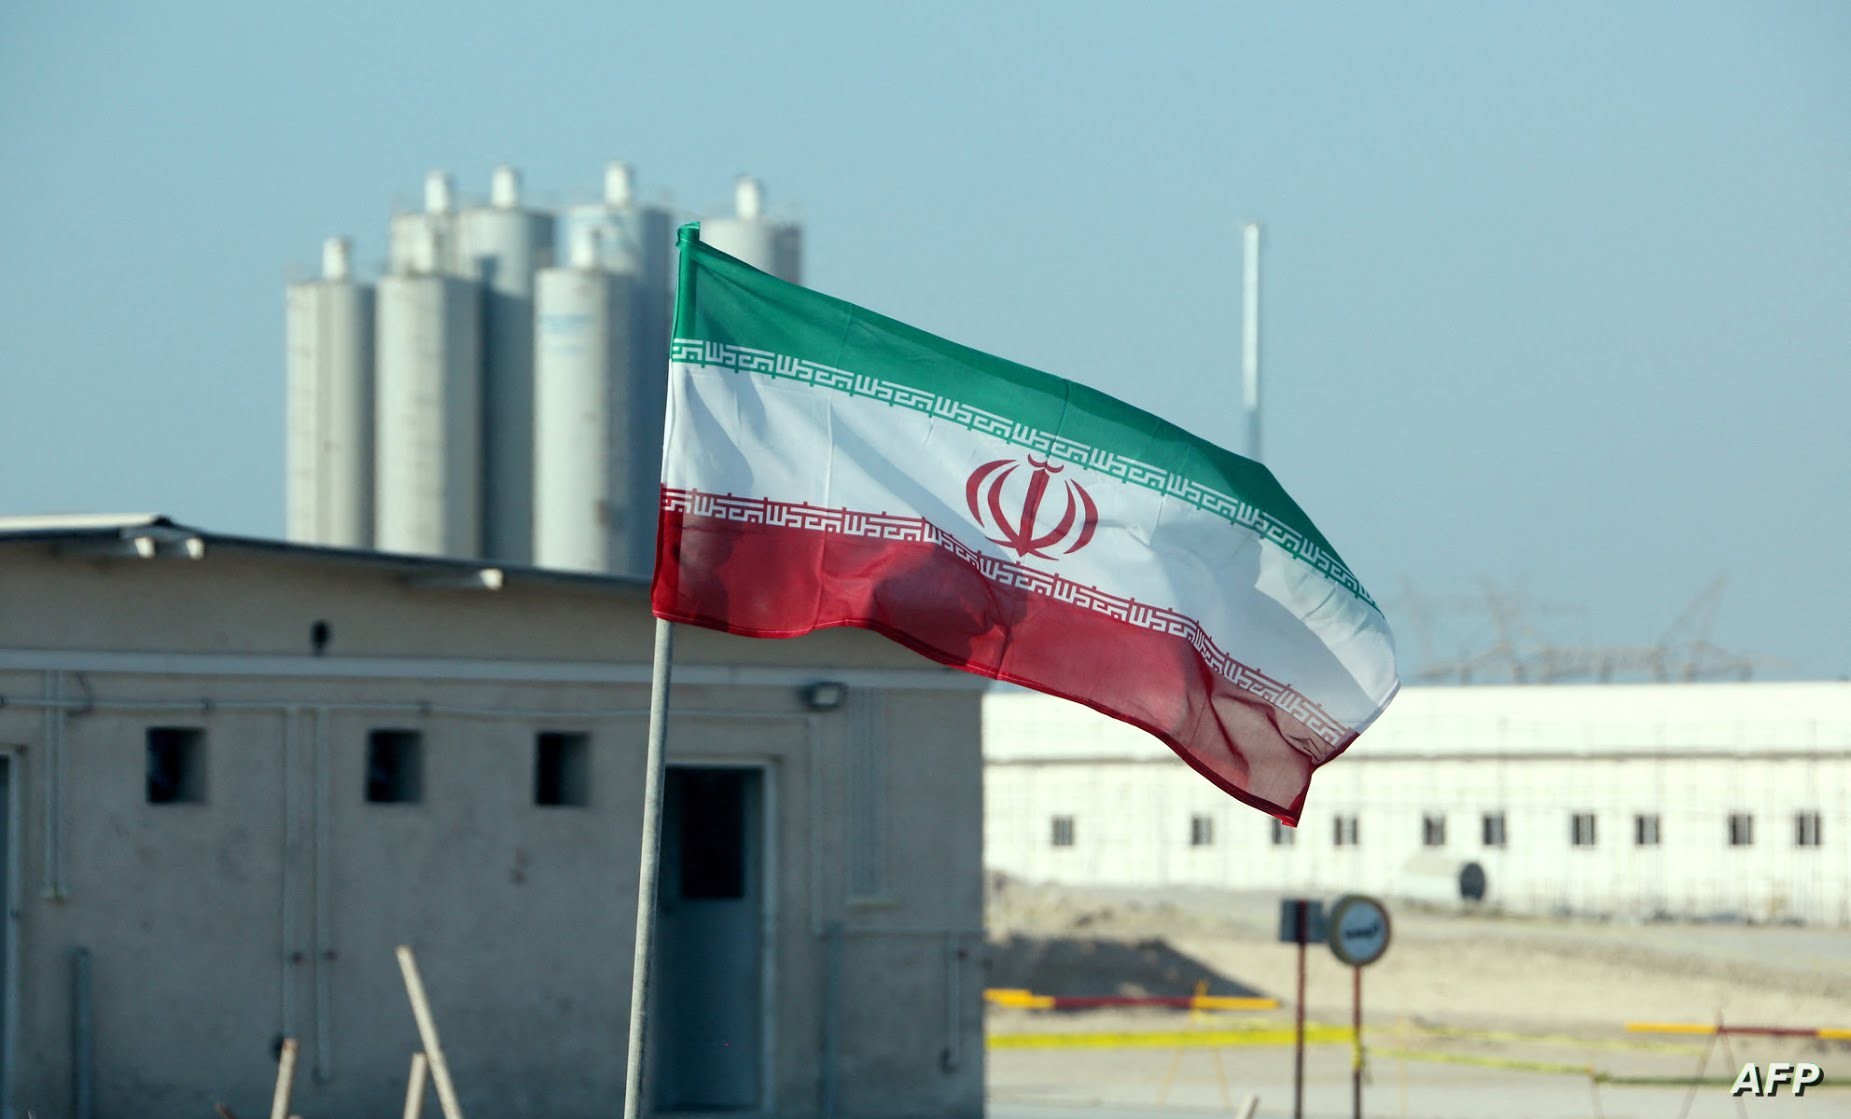 واشنطن -الحليف الرئيسي لإسرائيل- تجري محادثات مع طهران لتحديد خطوات يمكن أن تشمل الحد من البرنامج النووي الإيراني